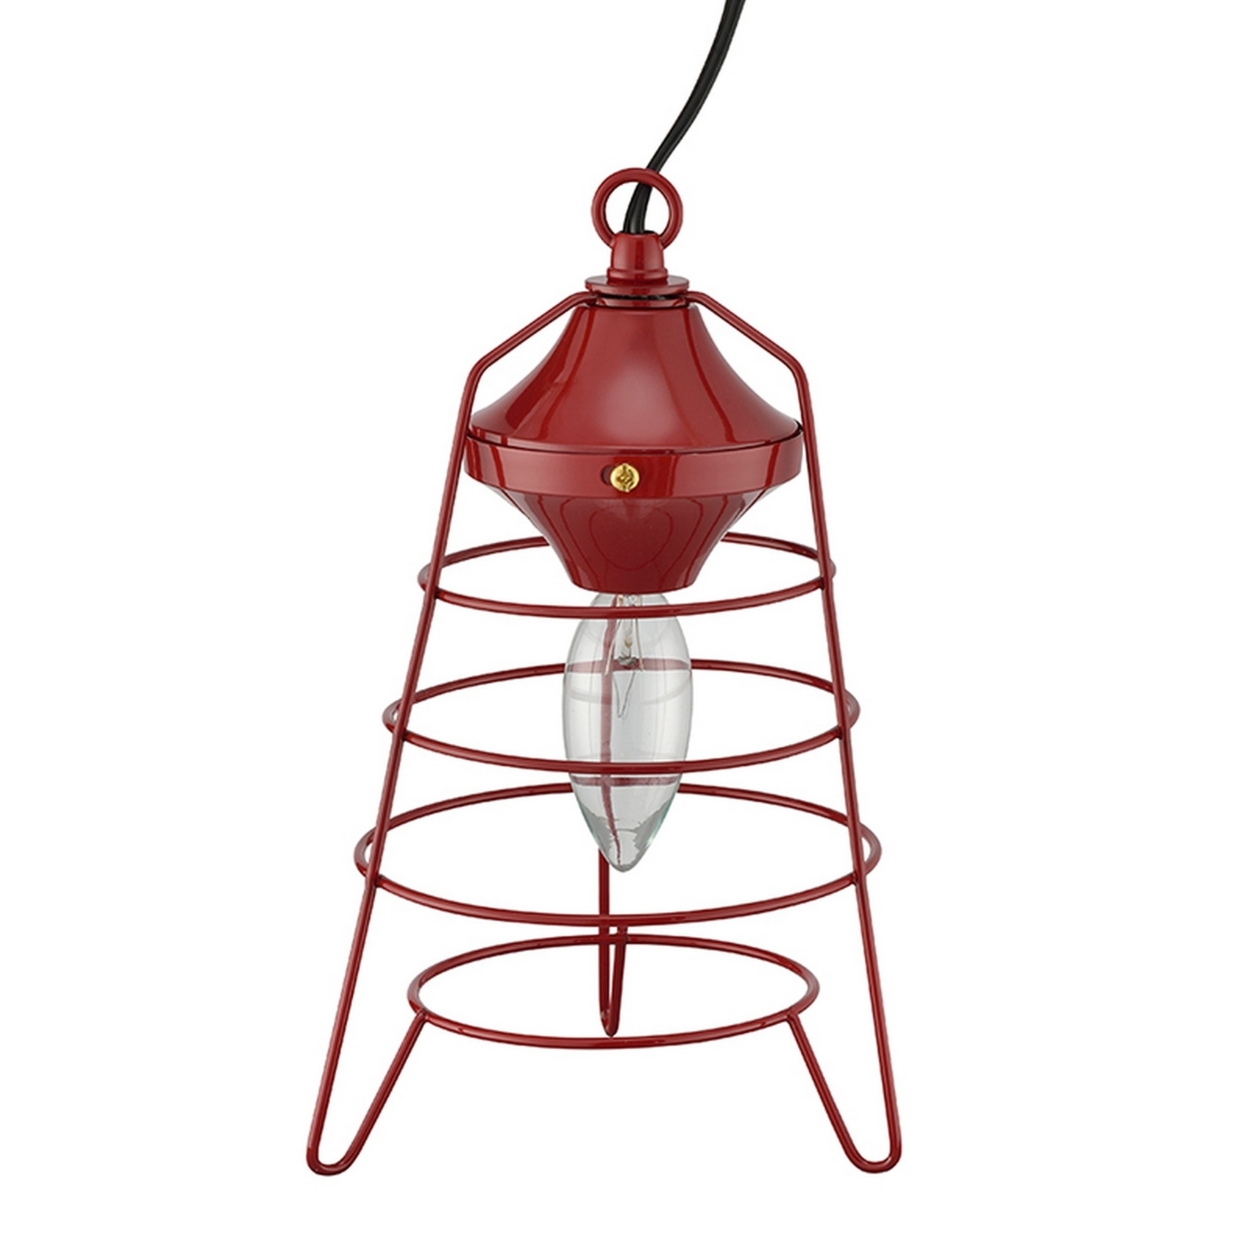 Lantern Table Lamp With Open Metal Frame, Red- Saltoro Sherpi